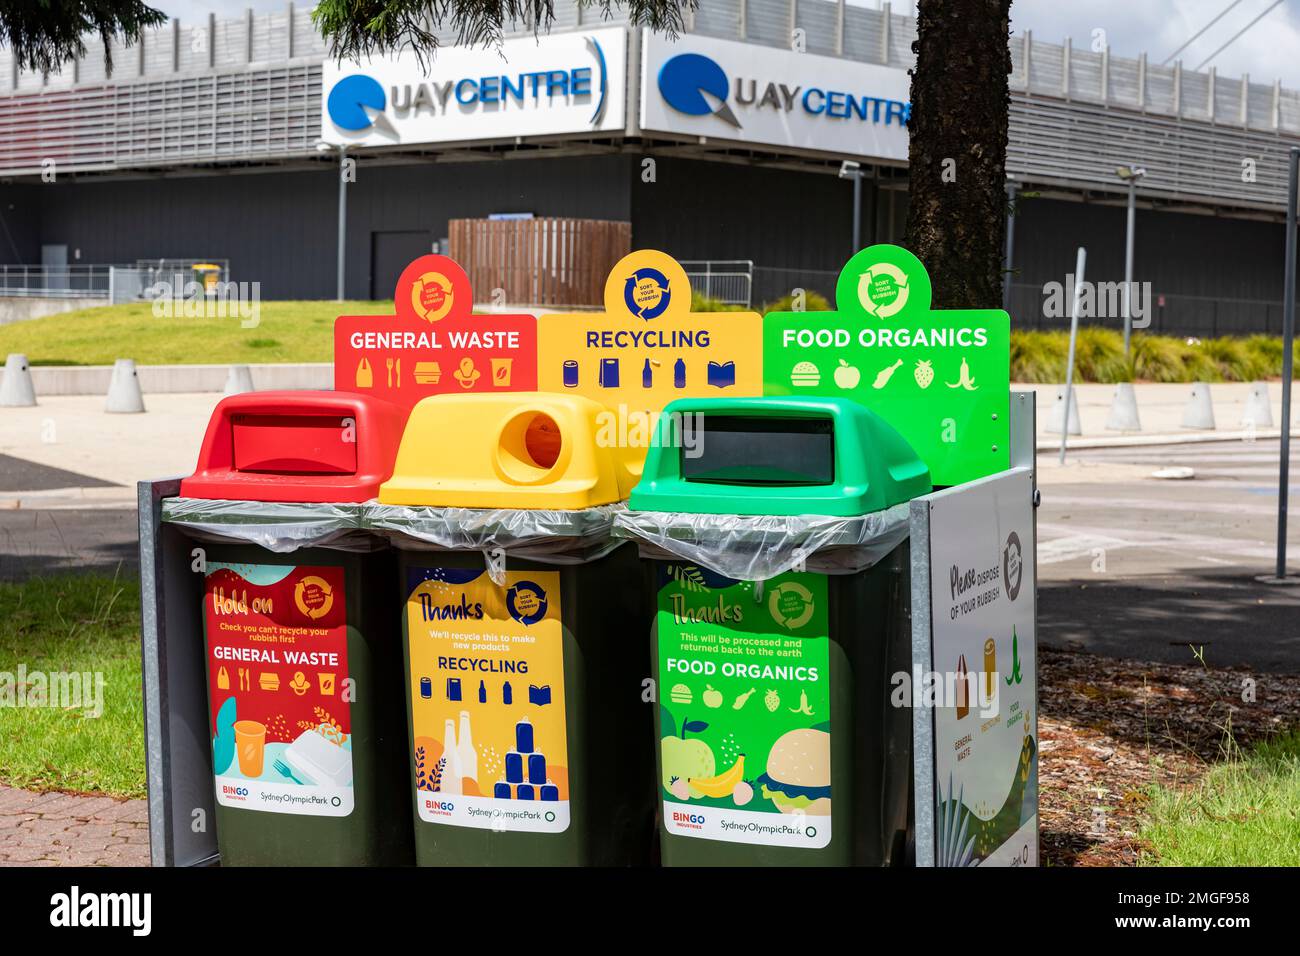 Bacs de recyclage, parc olympique de Sydney, recyclage des produits organiques alimentaires, recyclage du verre et des canettes et poubelles pour déchets généraux, Australie Banque D'Images